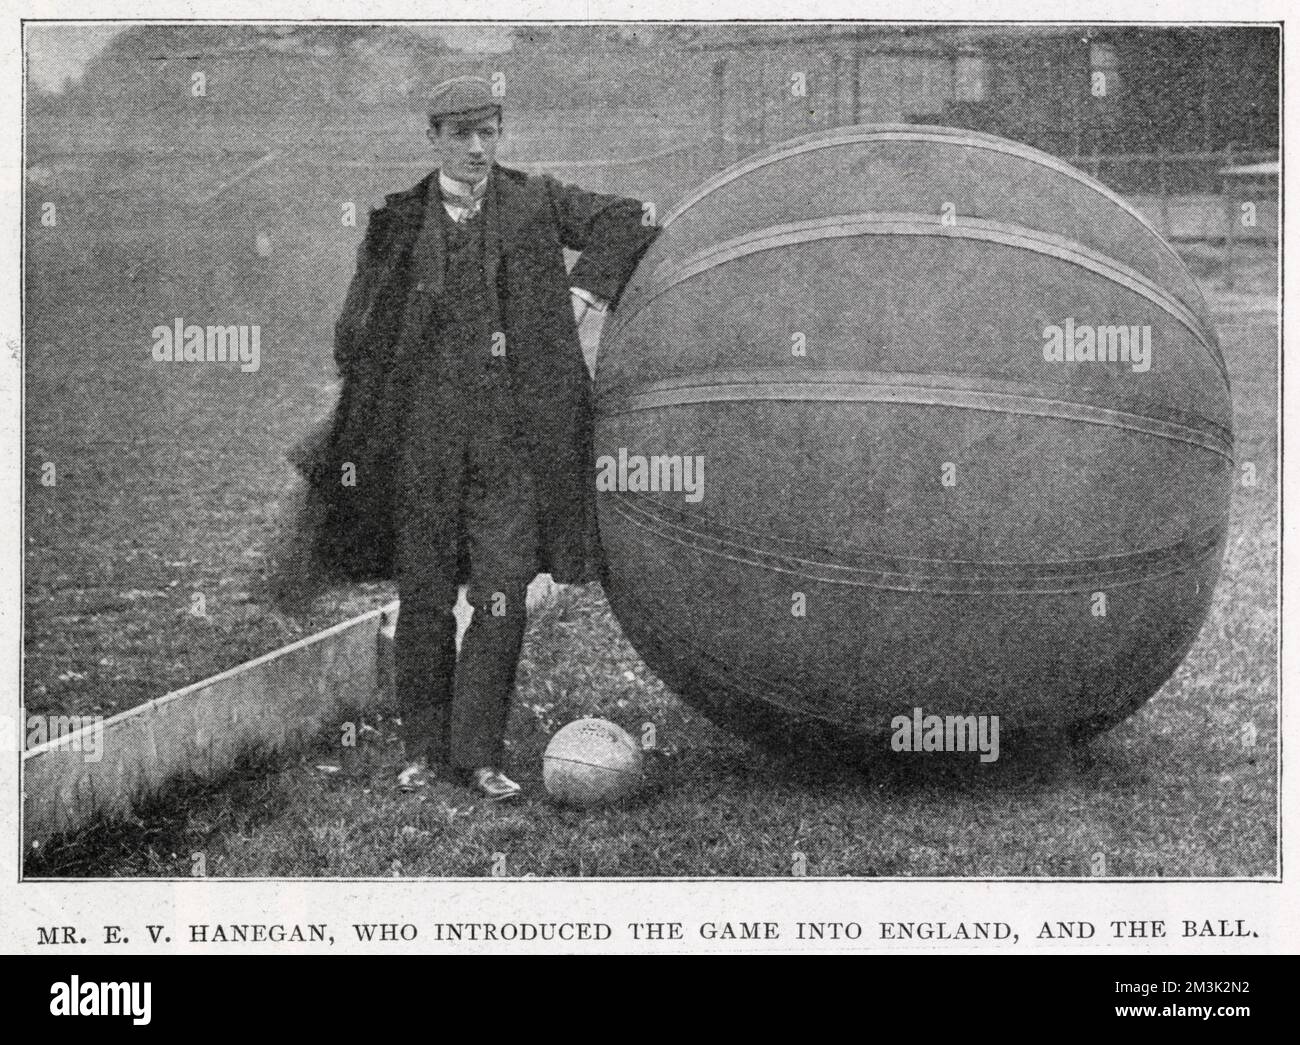 ES Hanegan, che ha introdotto il gioco del 'pushball' in Inghilterra (lo sport è stato inventato negli Stati Uniti). Hanegan è visto in piedi accanto a un 'pushball', che pesava 50lb, presso il Crystal Palace sport Ground, ottobre 1902. Foto Stock